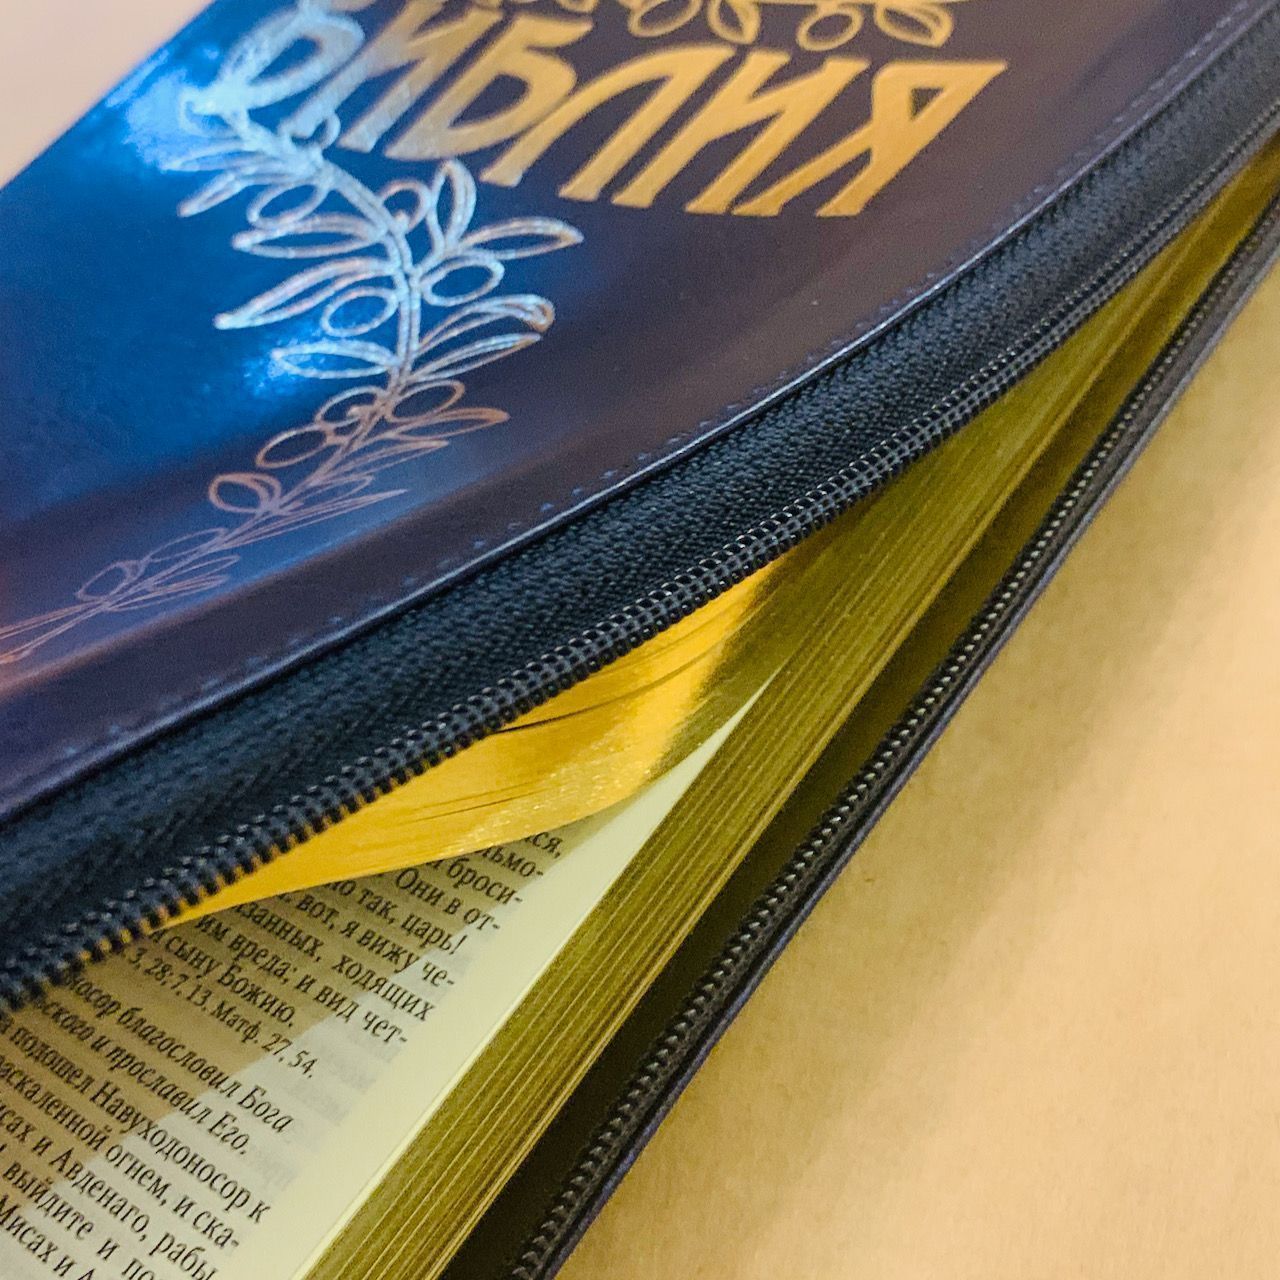 Библия Геце "с оливковой ветвью" 063z формат  (145*215 мм), чуть больше среднего  (прошитая), цвет синий, переплет из искусственной кожи на молнии, золотые страницы, закладка, код 11651